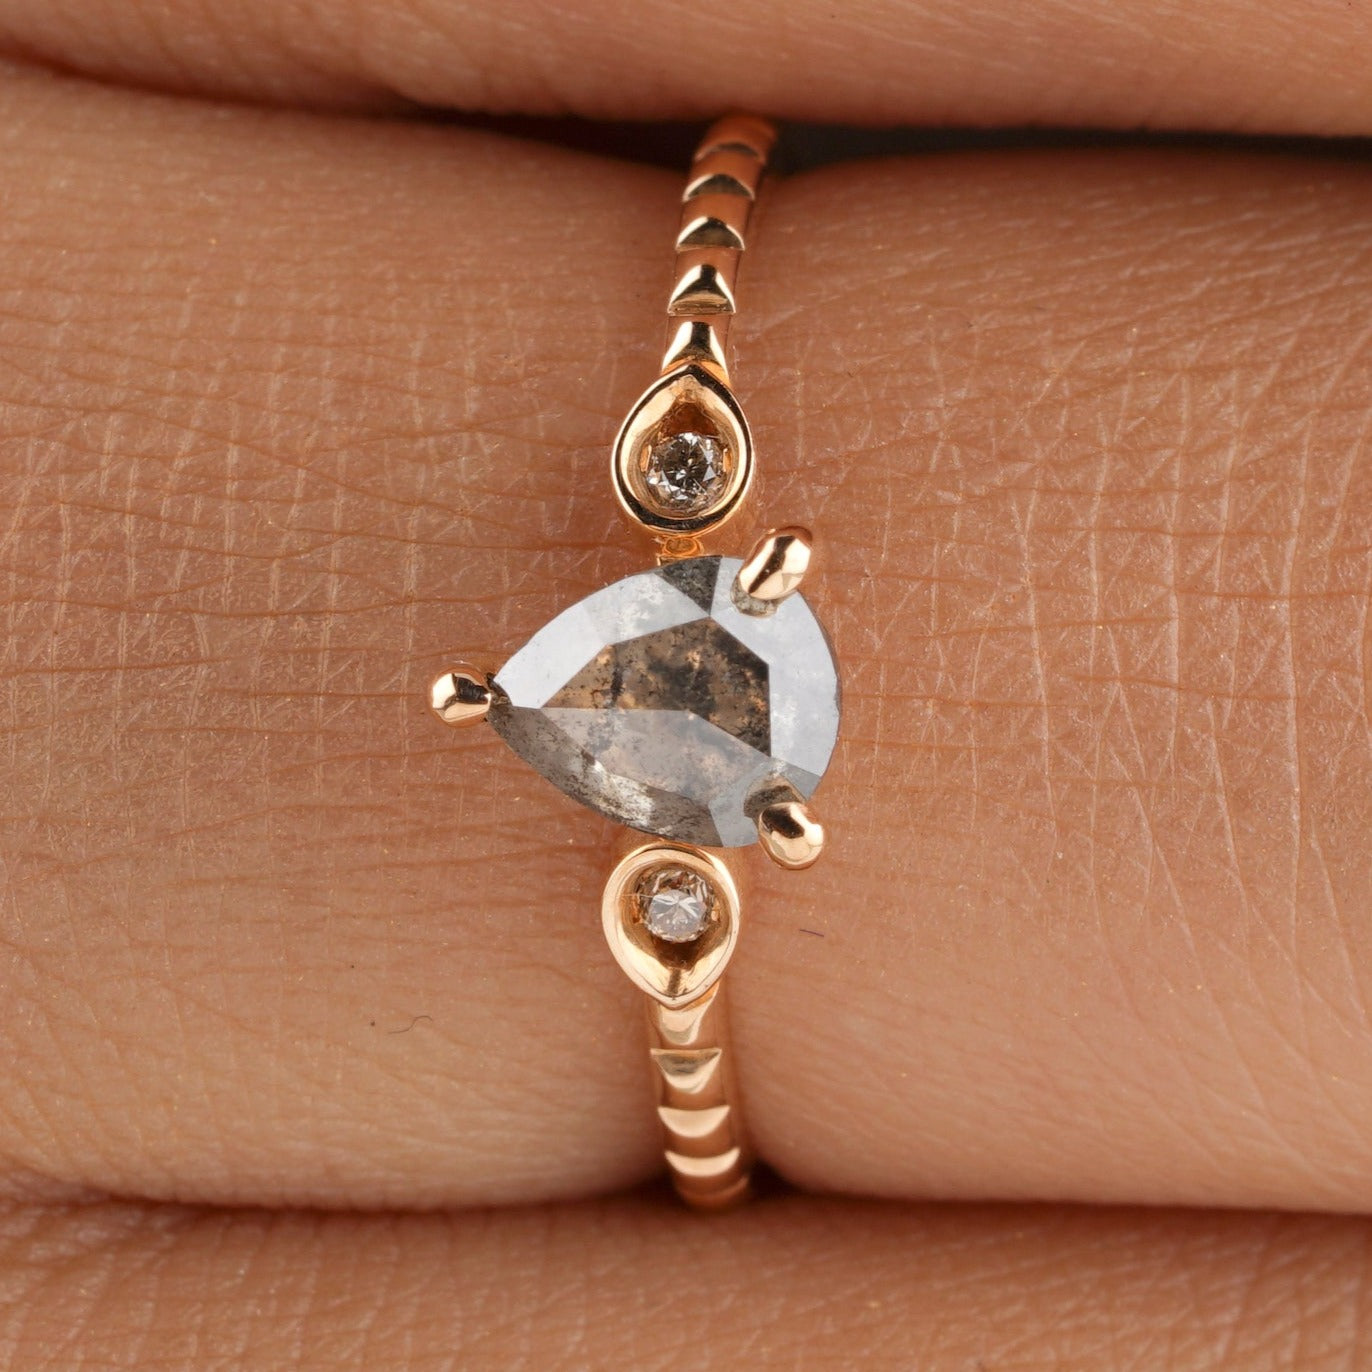 Unique Pear Cut Salt and Pepper Diamond Engagement Ring - Eurekalook